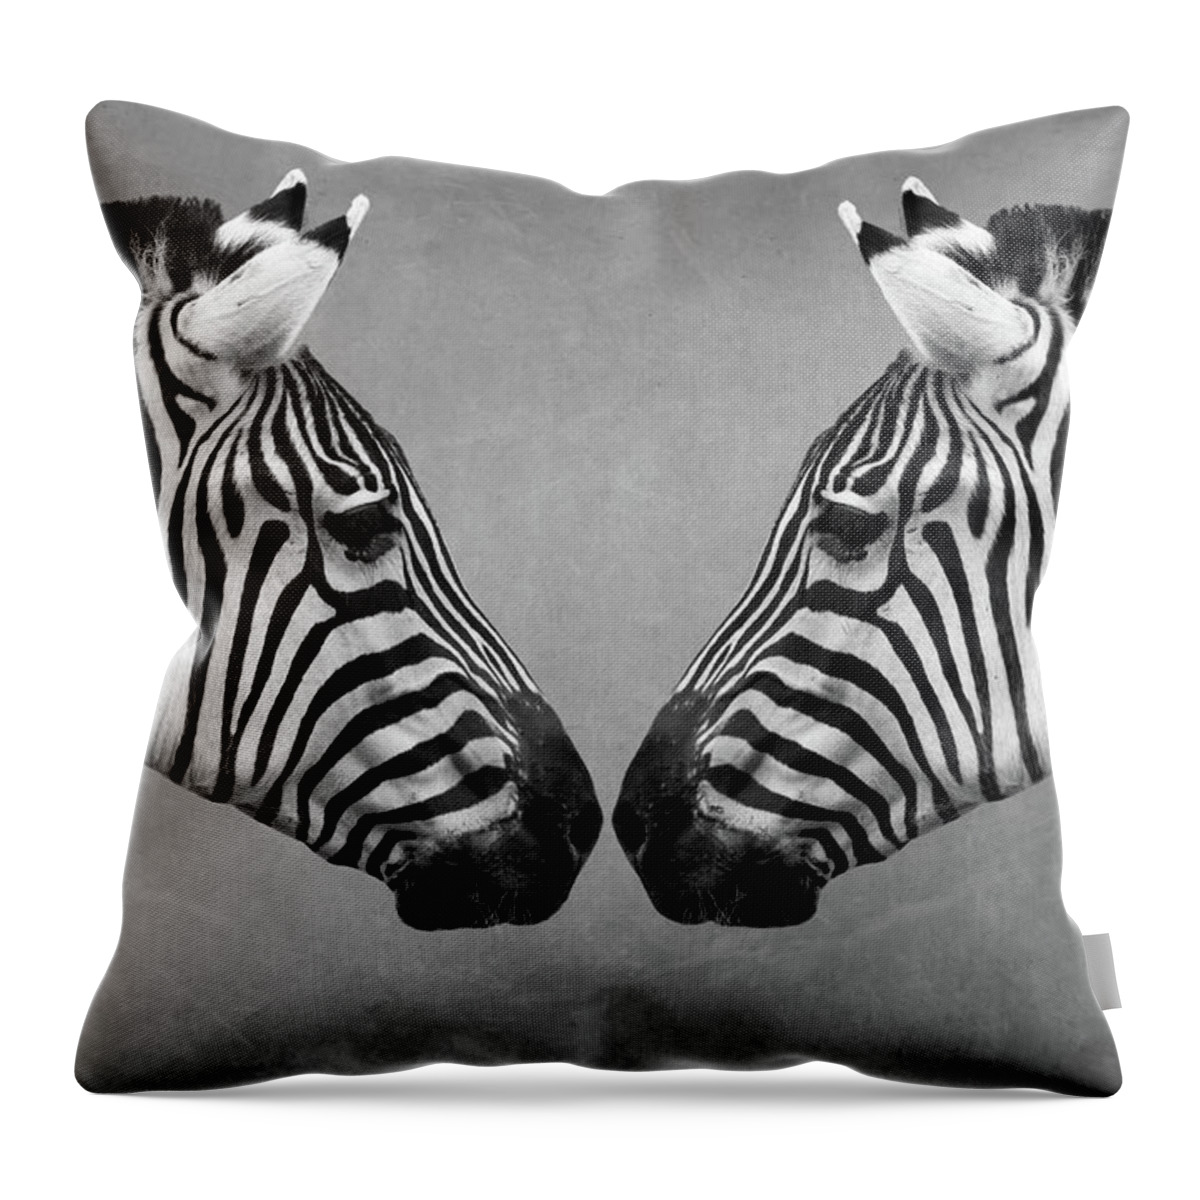 Zebra Throw Pillow featuring the digital art Zebra Twins by Marjolein Van Middelkoop